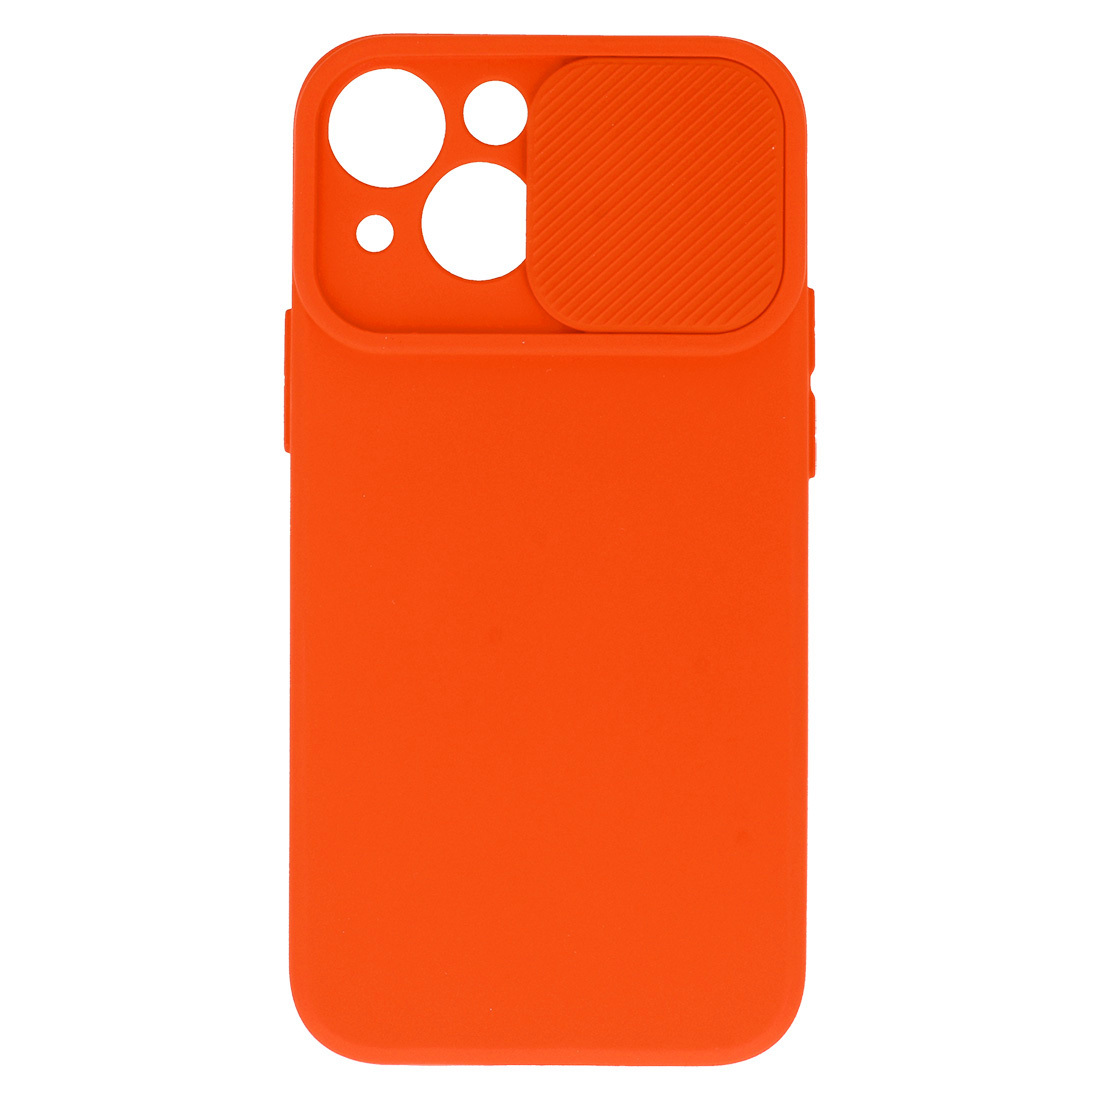 Pokrowiec etui z elastycznego TPU Camshield Soft Case pomaraczowe APPLE iPhone 11 Pro / 4